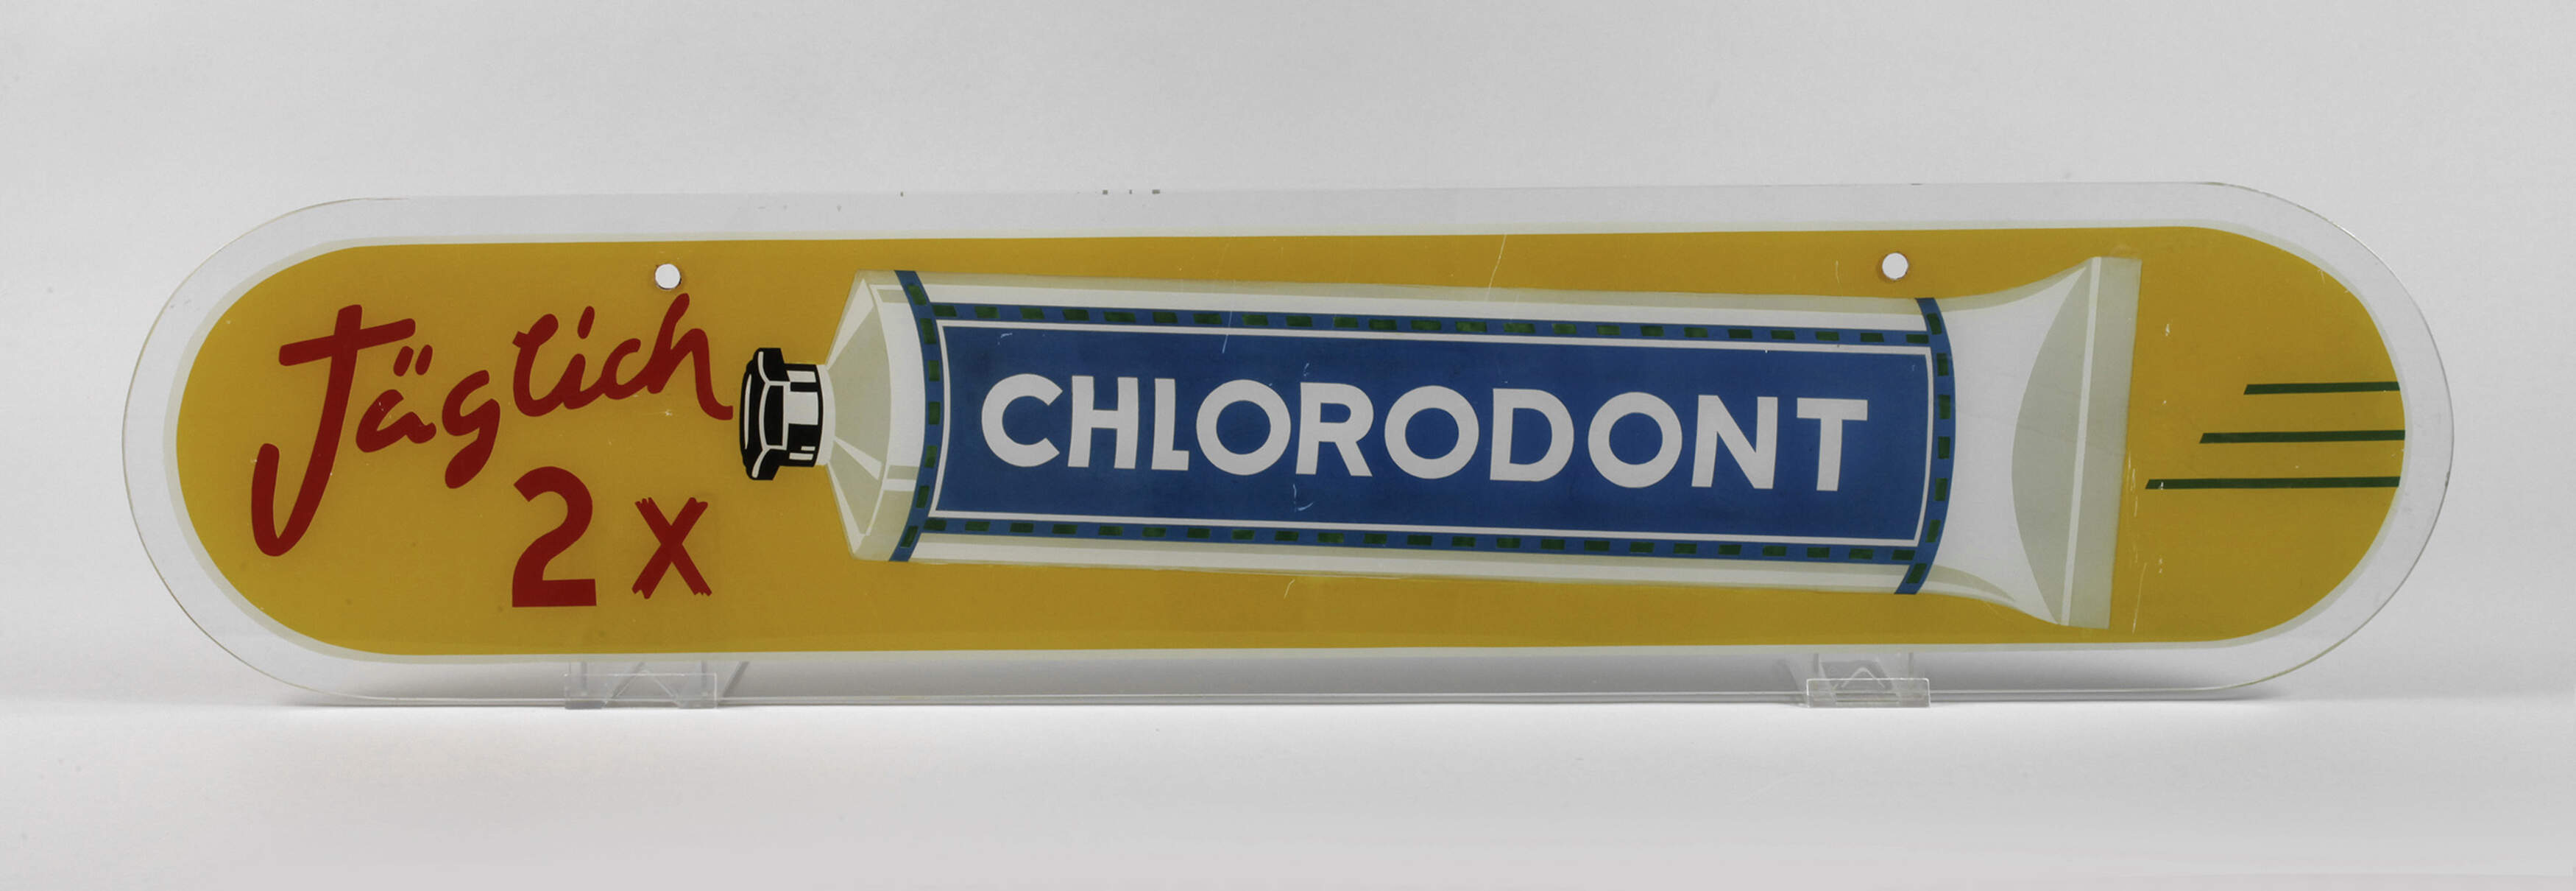 Werbeschild Chlorodont